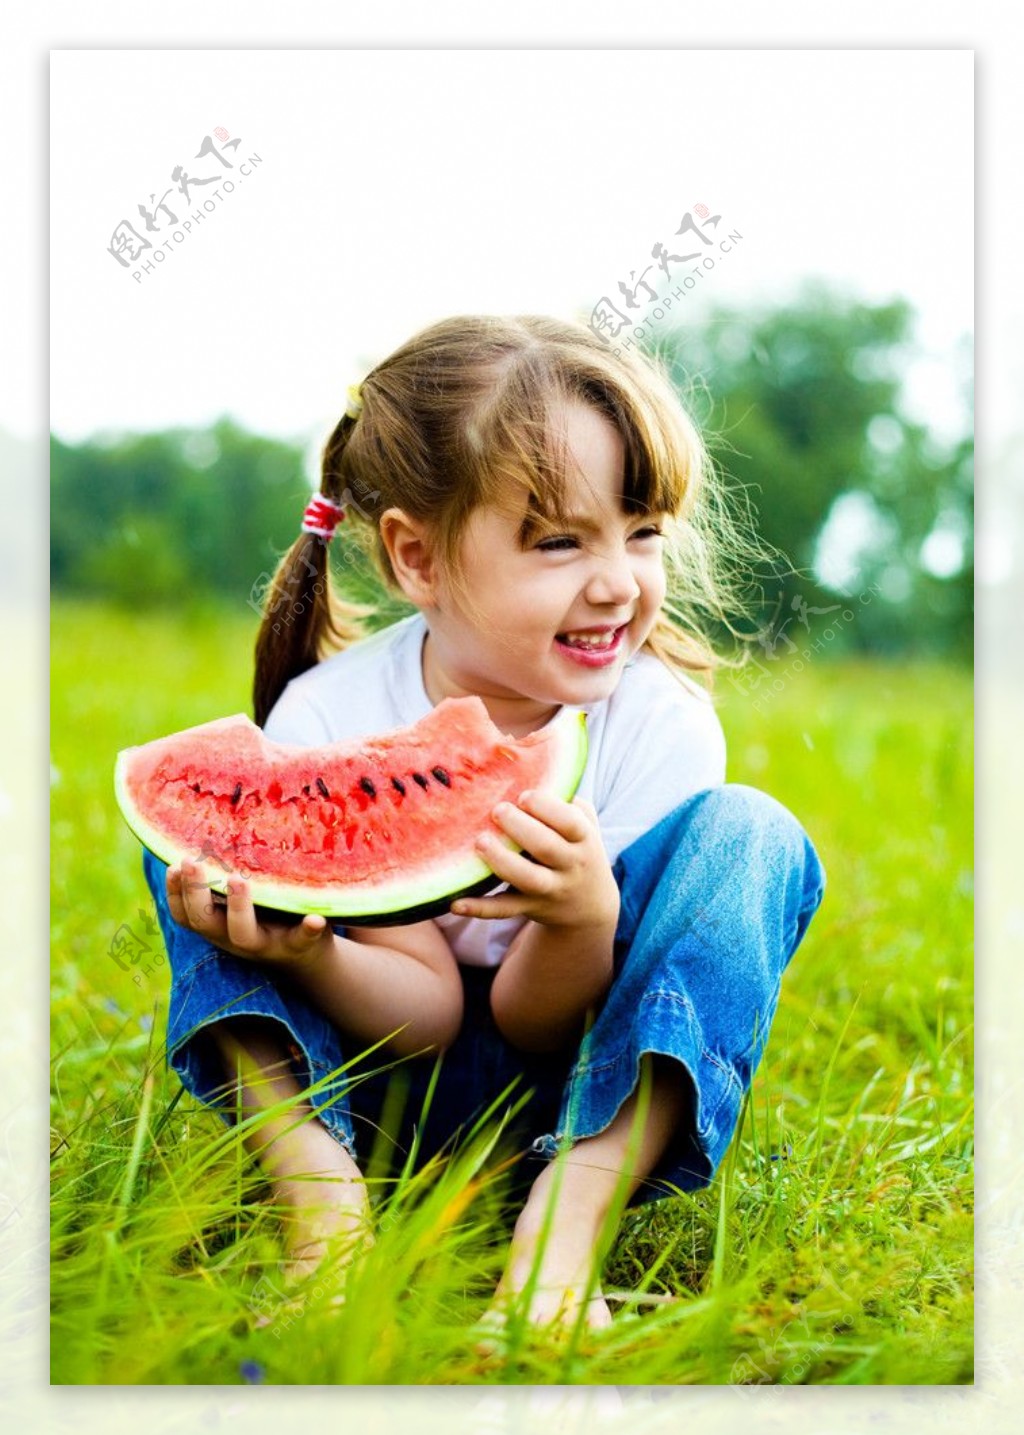 坐着吃西瓜的小女孩图片